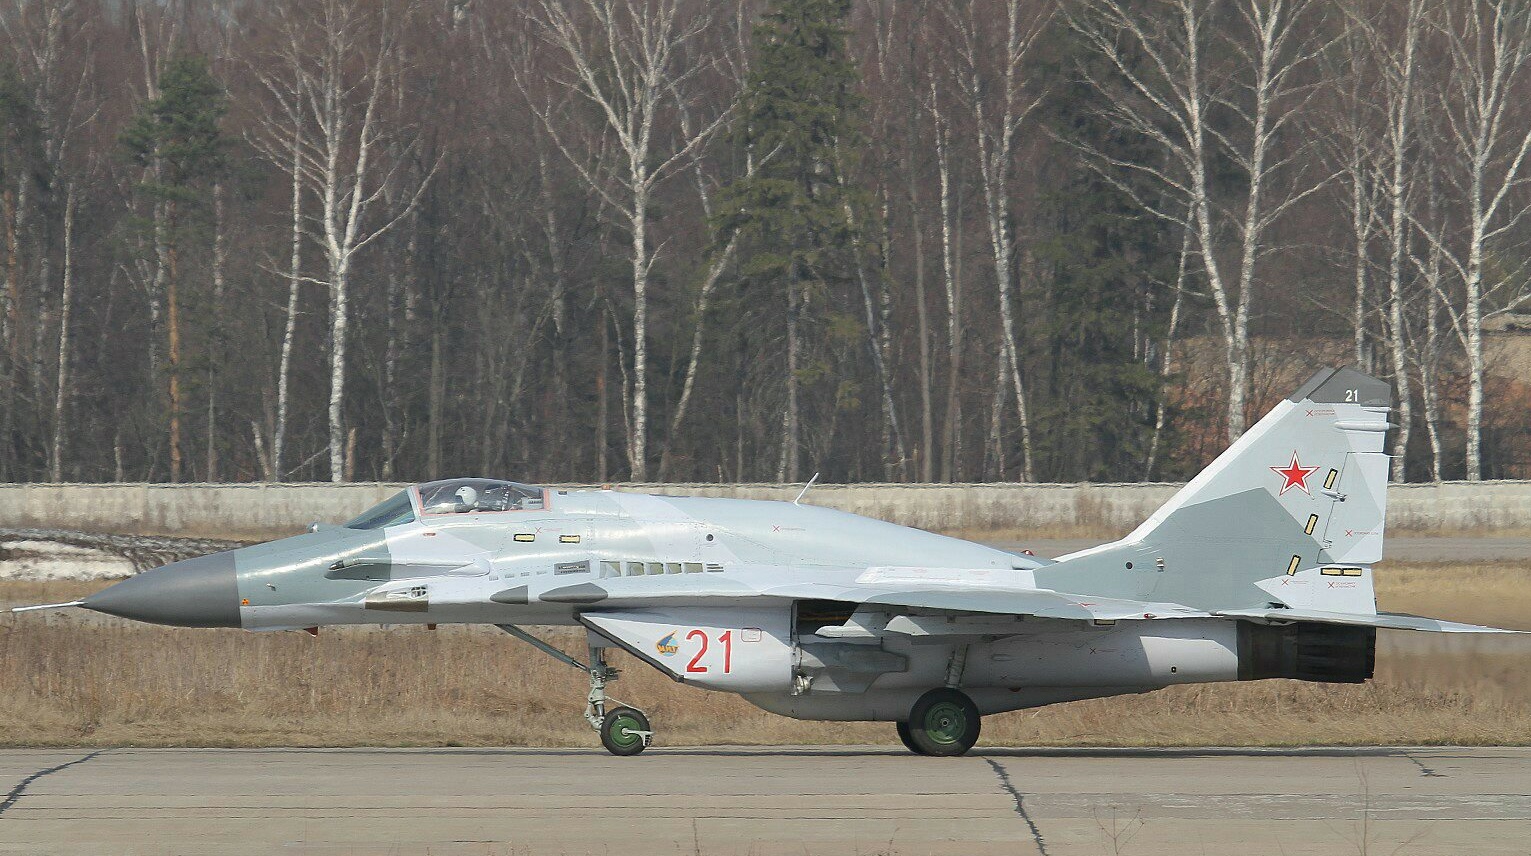 Chiến đấu cơ MiG-29SMT hoàn toàn có khả năng đáp ứng các yêu cầu của chiến tranh công nghệ cao